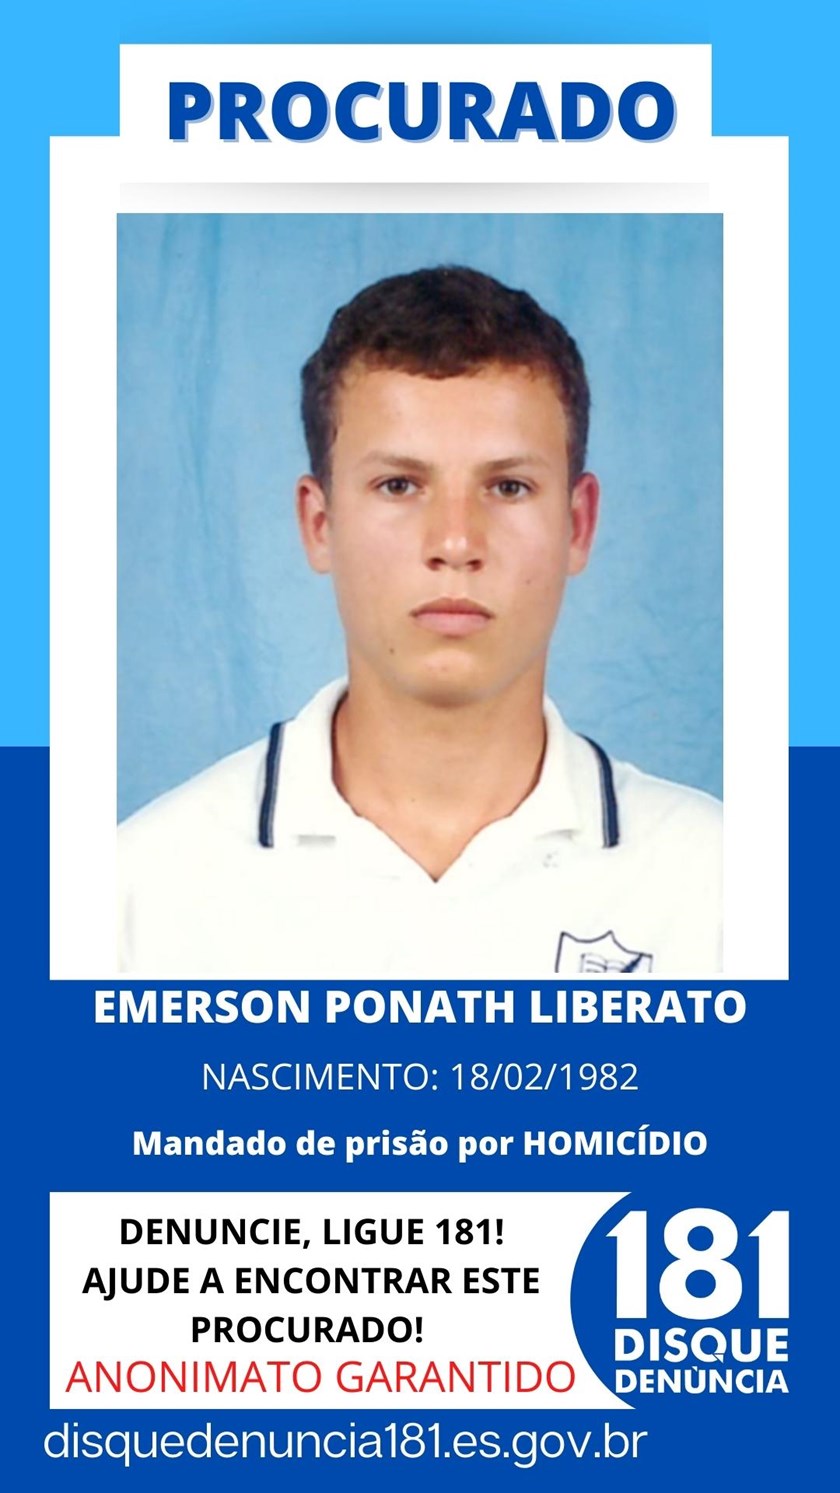 Logomarca - EMERSON PONATH LIBERATO